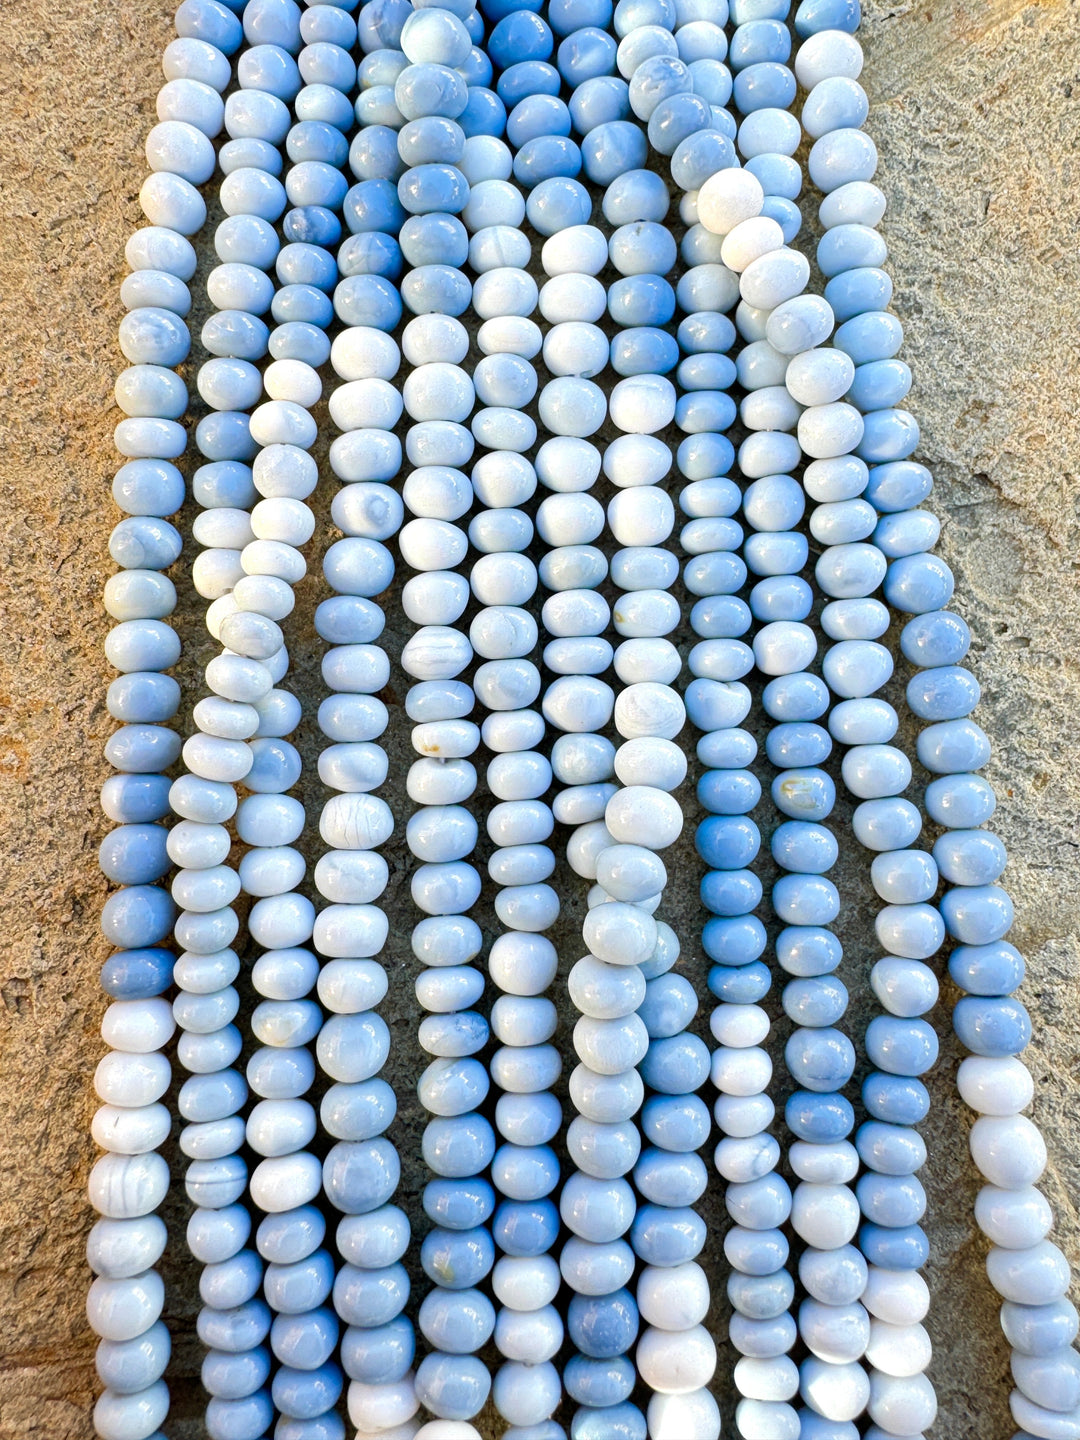 Owyhee Blue Opal (Oregon) 7mm Rondell Shaped Beads (16 inch